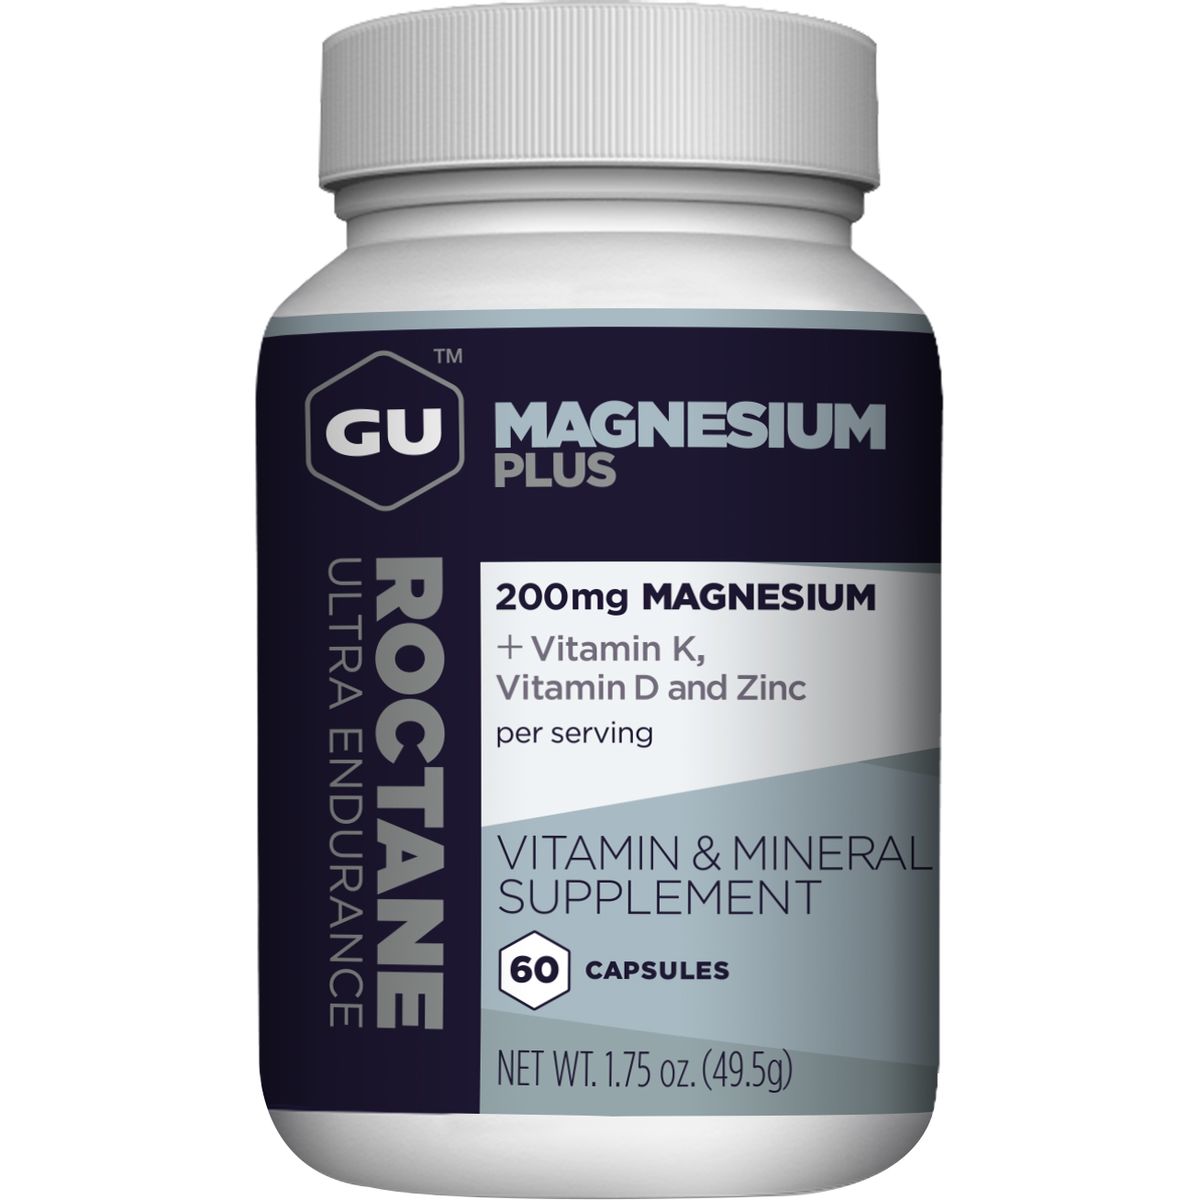 GU Roctane Magnesium Plus Capsules - 60-Pack